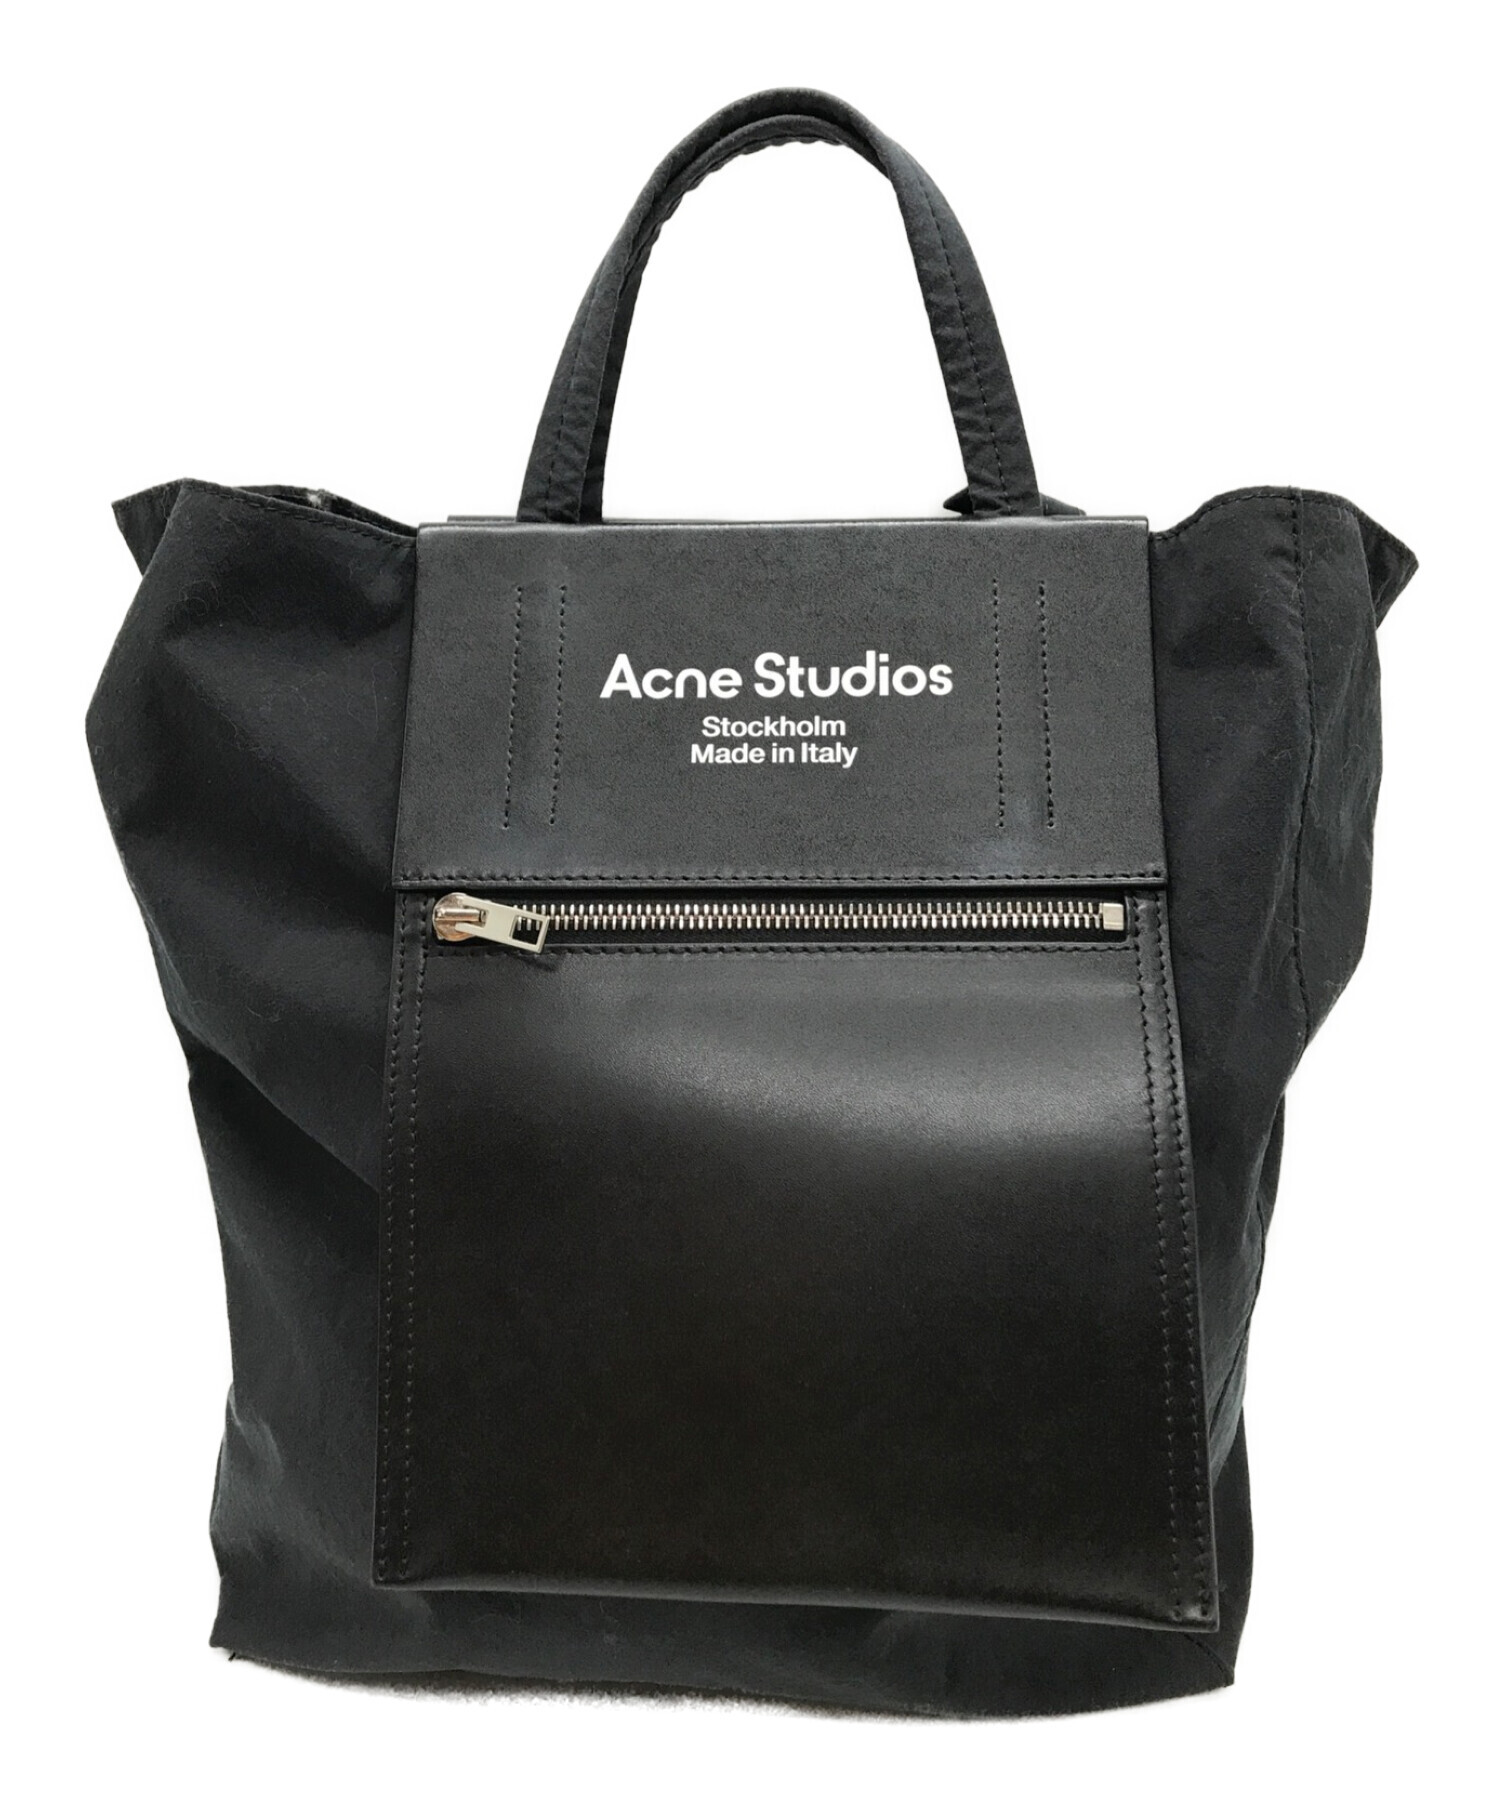 Acne Studios Tote Bag Black Medium